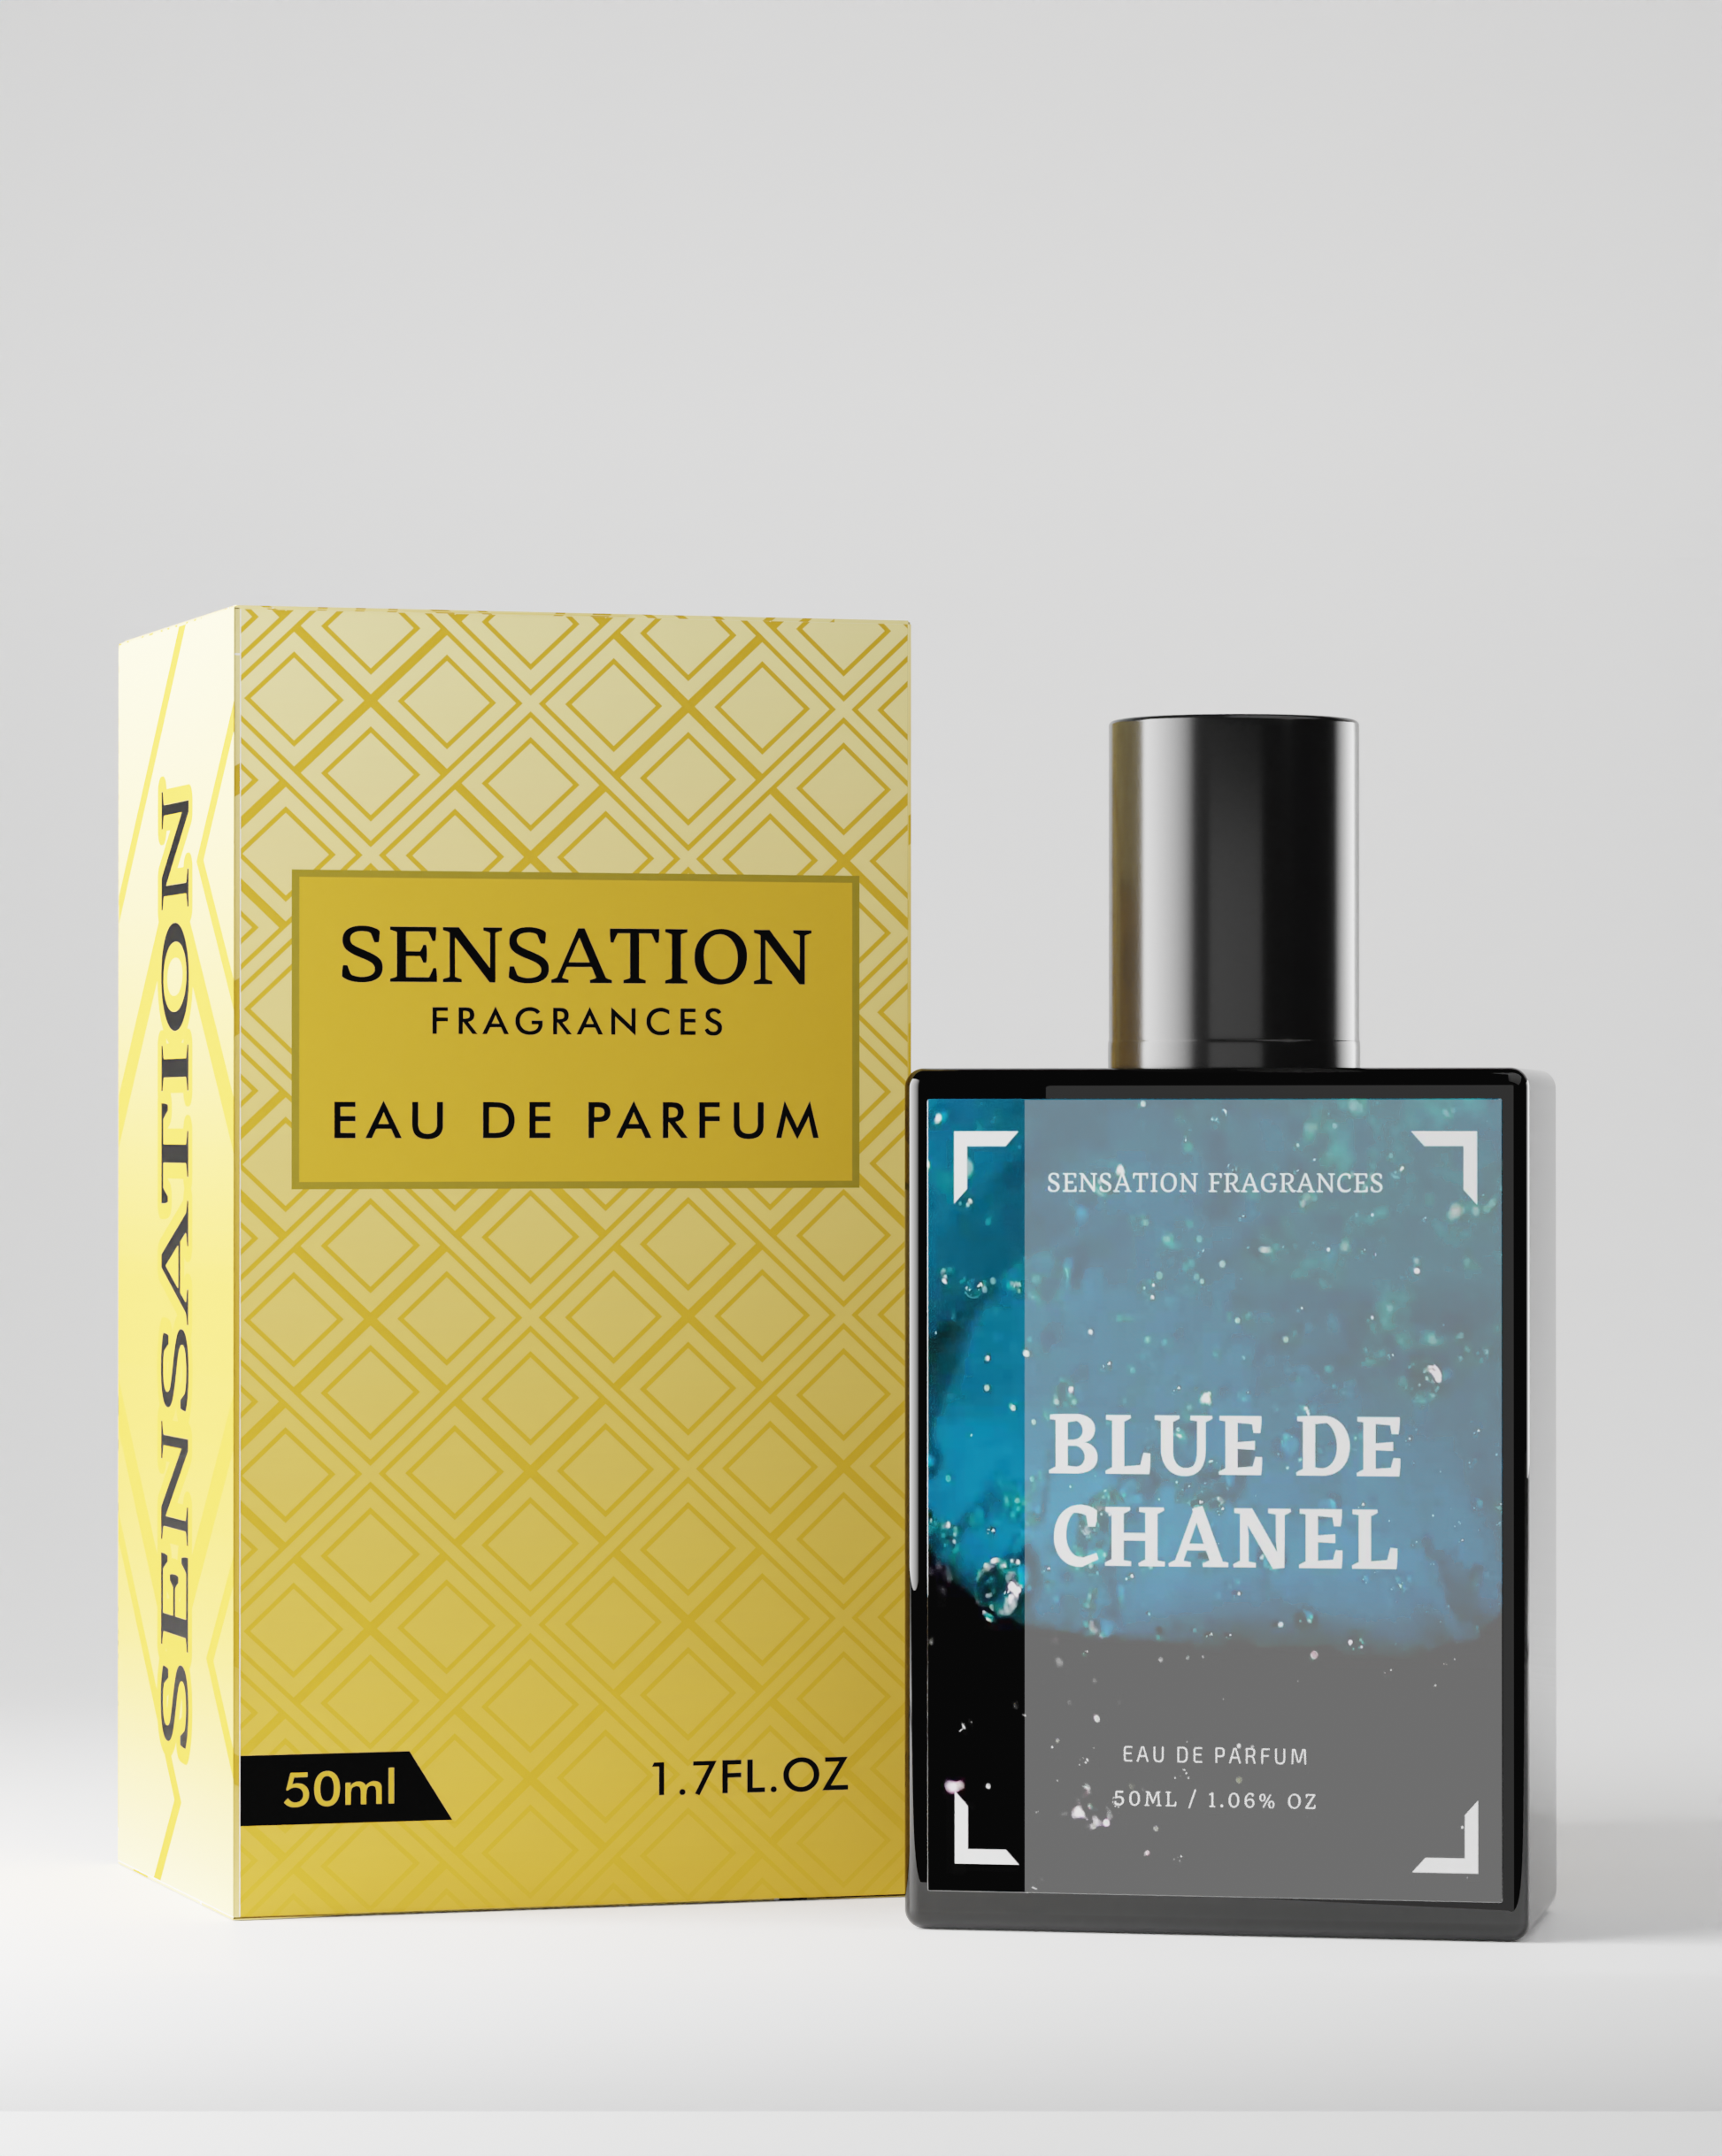 Chanel Bleu De Chanel Eau de Parfum, Cologne for Men, 1.7 Oz